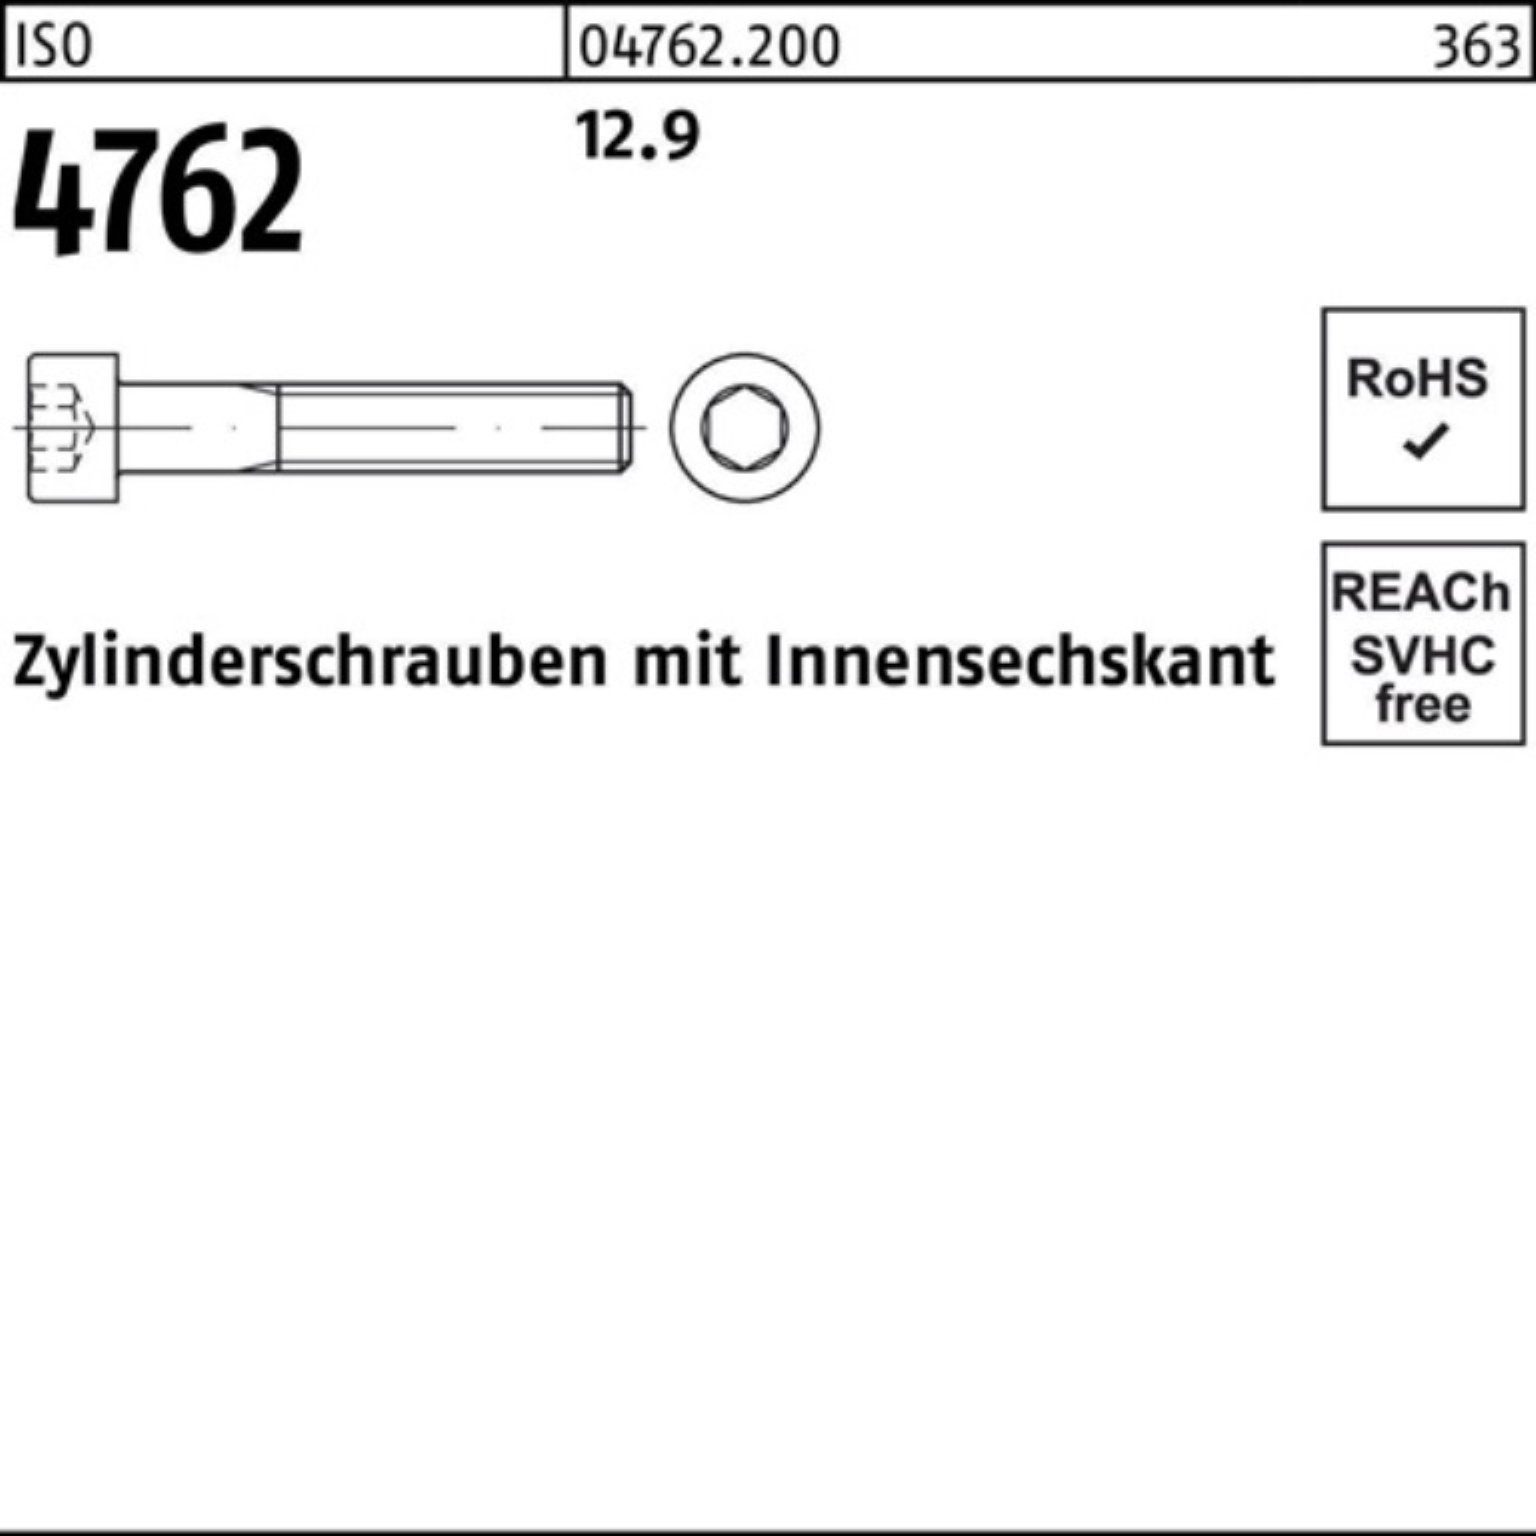 Zylinderschraube 4762 1 Reyher M36x I 90 100er 12.9 ISO Innen-6kt Pack Zylinderschraube Stück